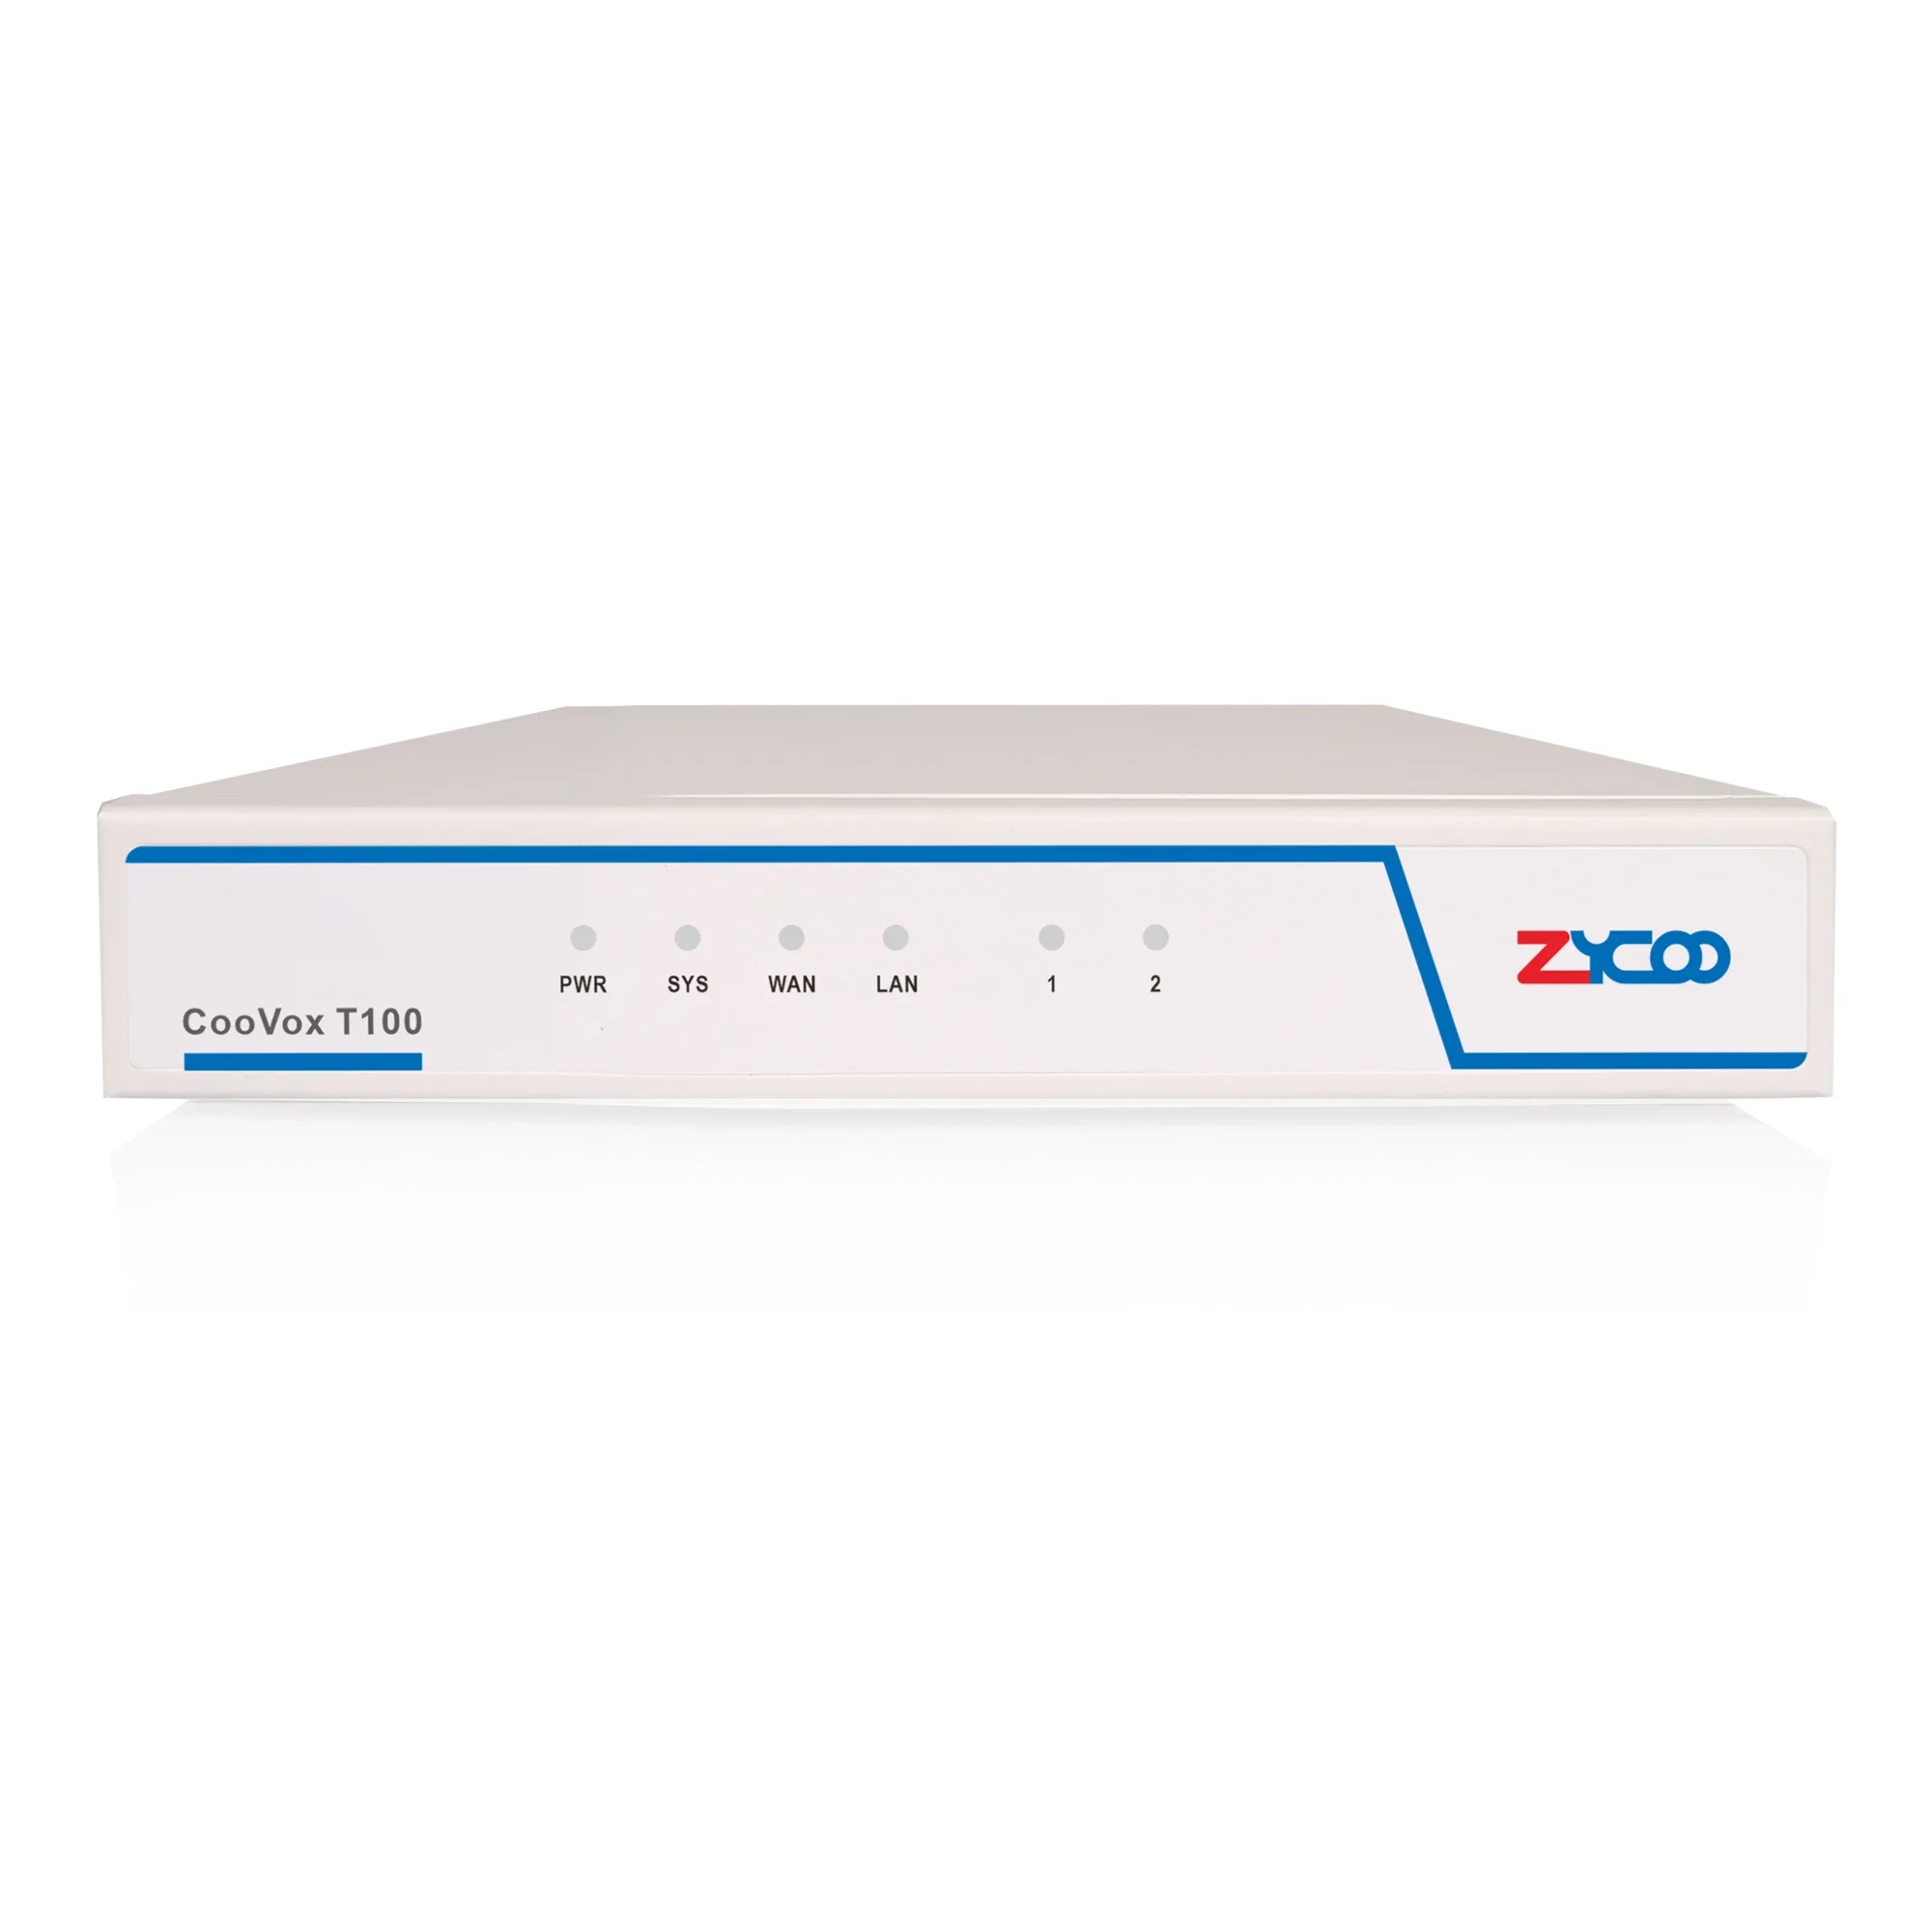 

Zycoo New VoIP PBX с 100 пользователями sip-расширения и портом 2FXO, CooVox-T100